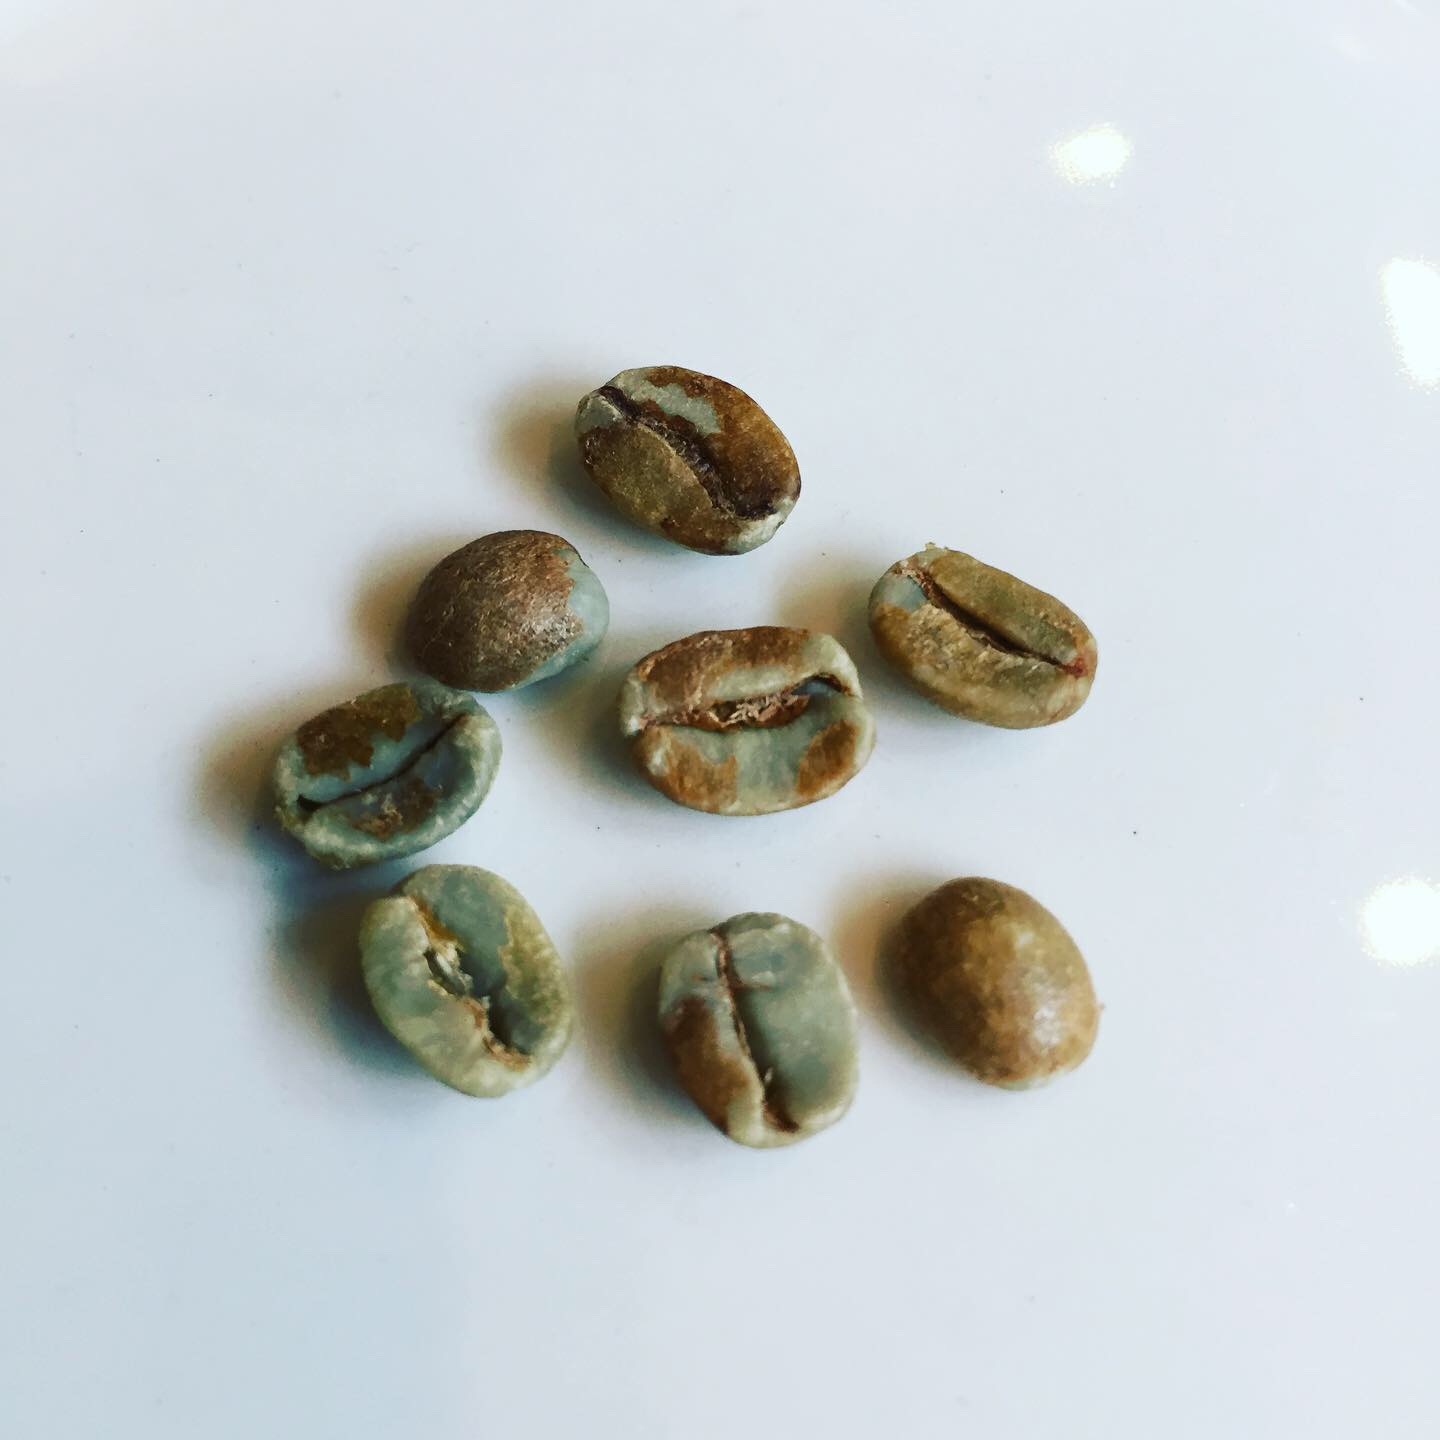 コーヒーの生豆をお米のように研いでから焙煎する【水研ぎ焙煎】のコーヒー豆！